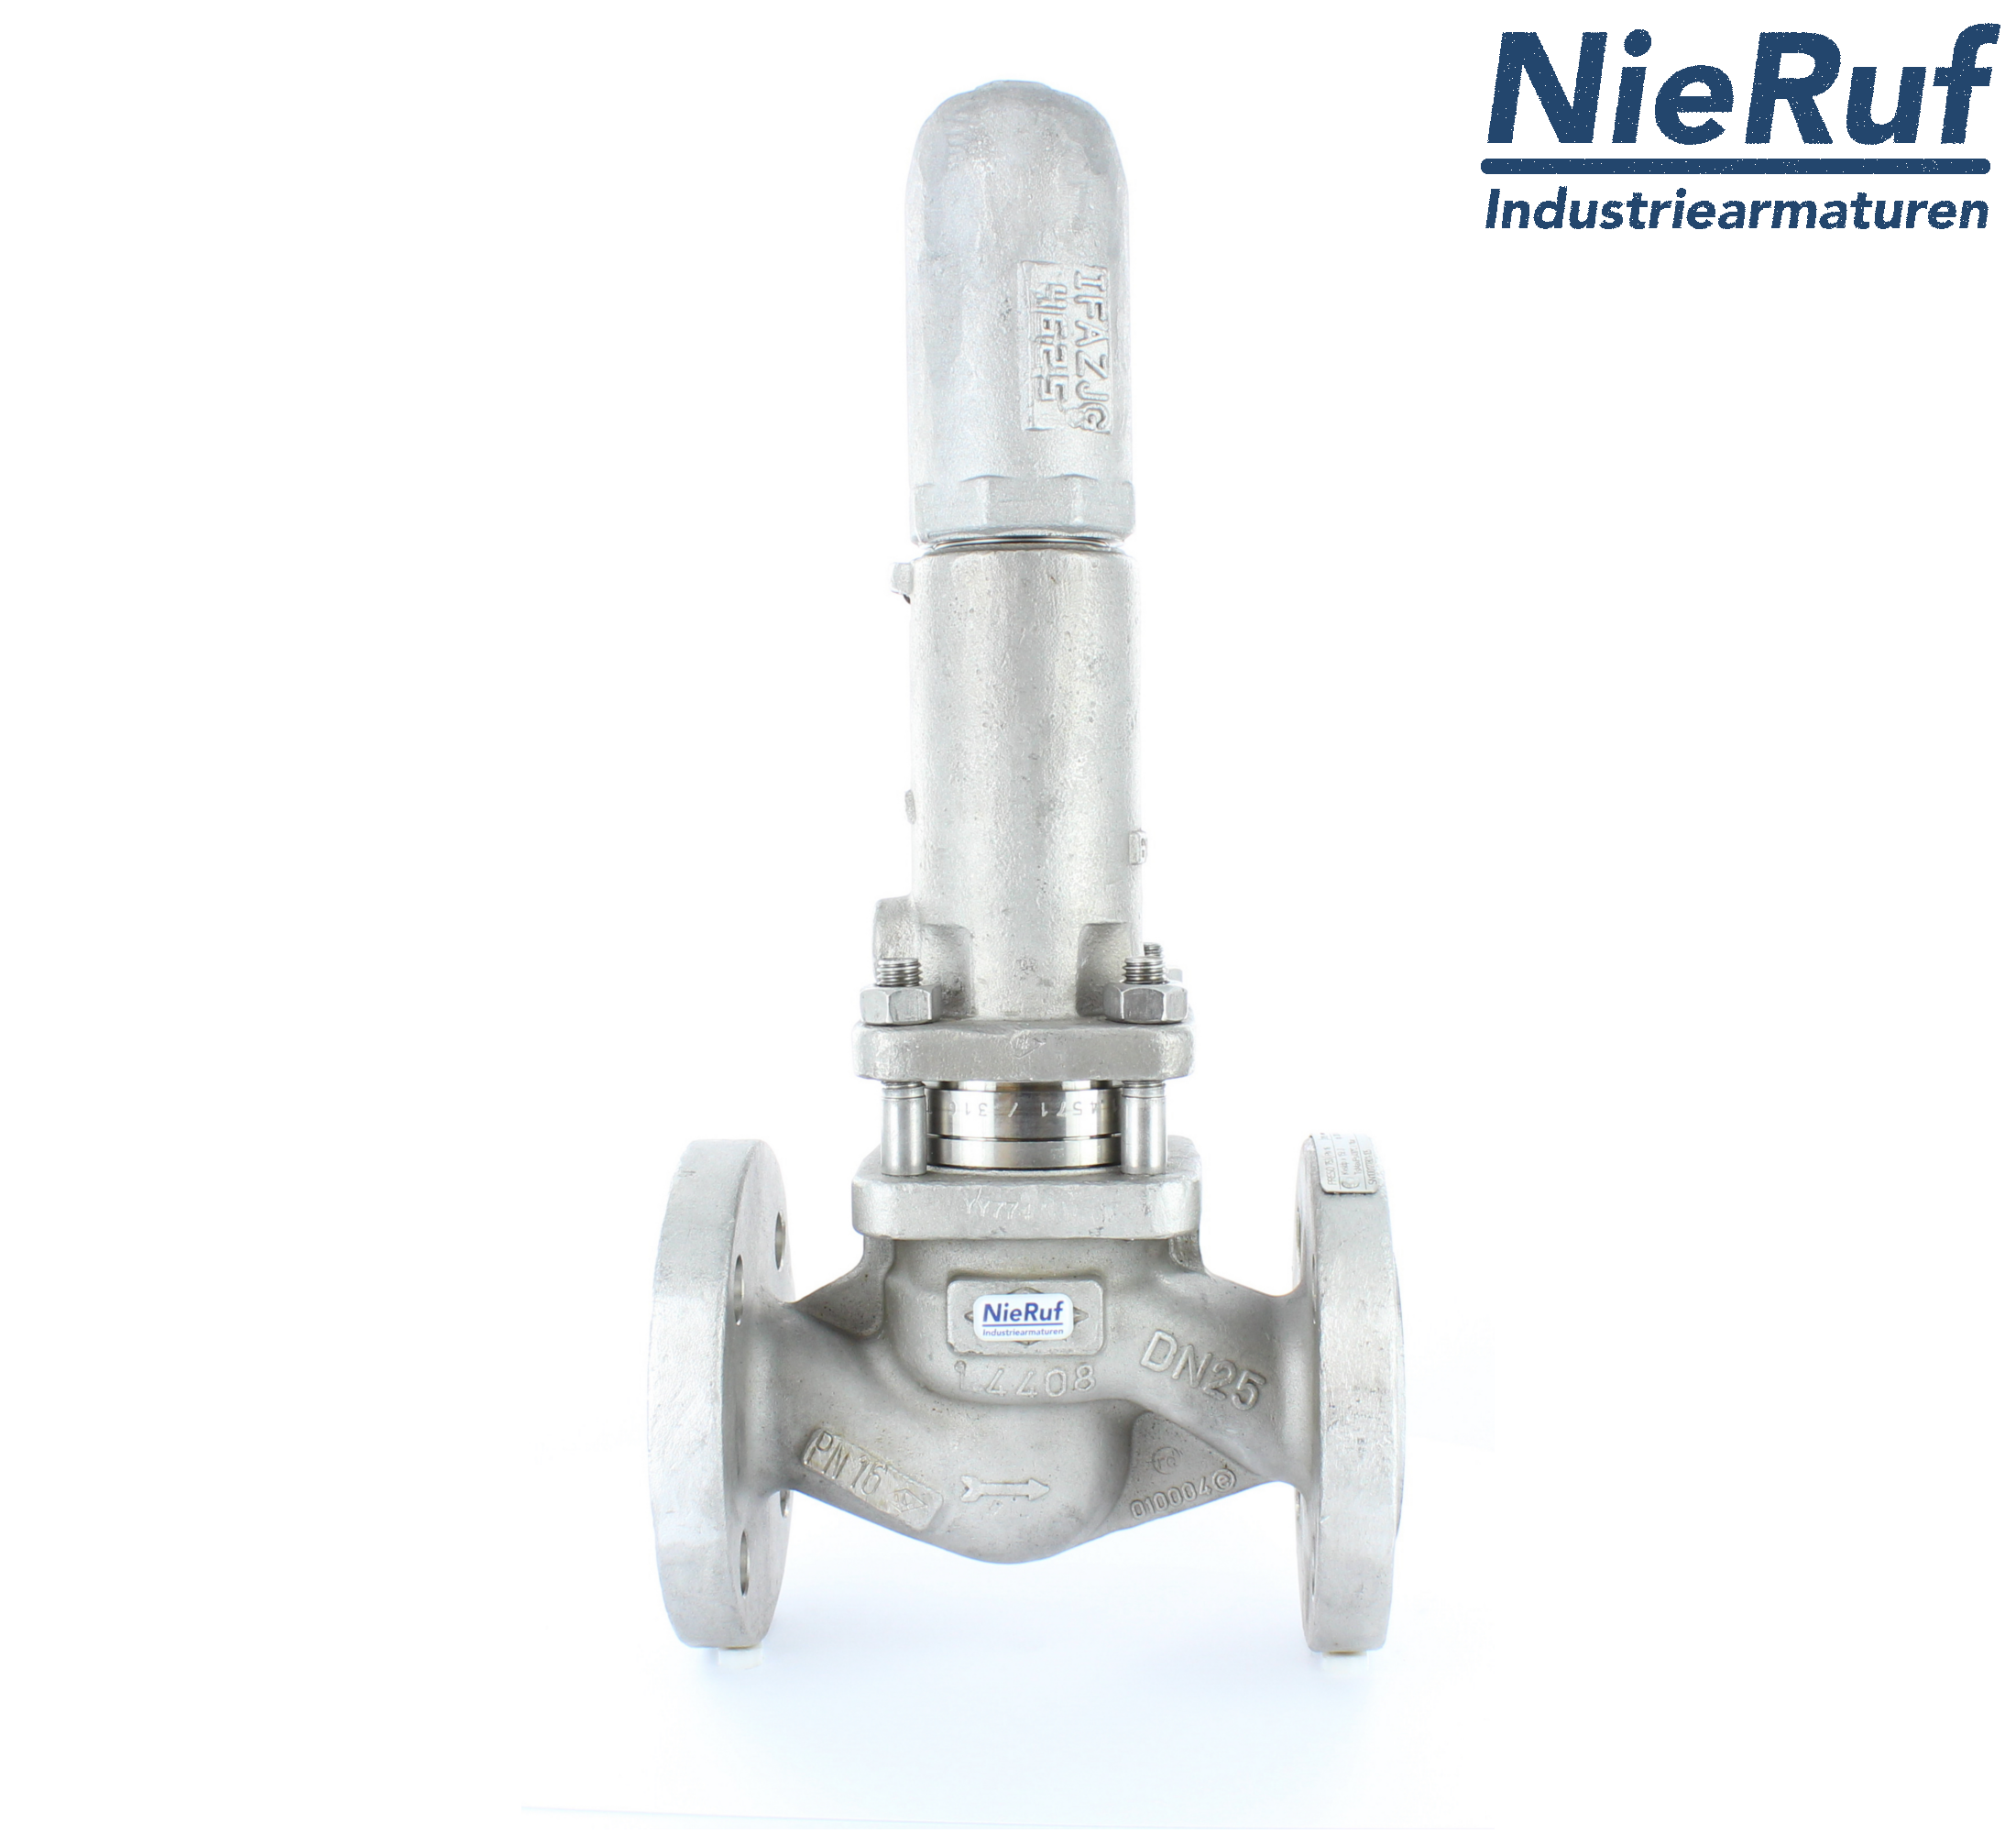 piston overflow valve DN 50 UV13 cast iron 1.0619+N 1,0 - 3,0 bar